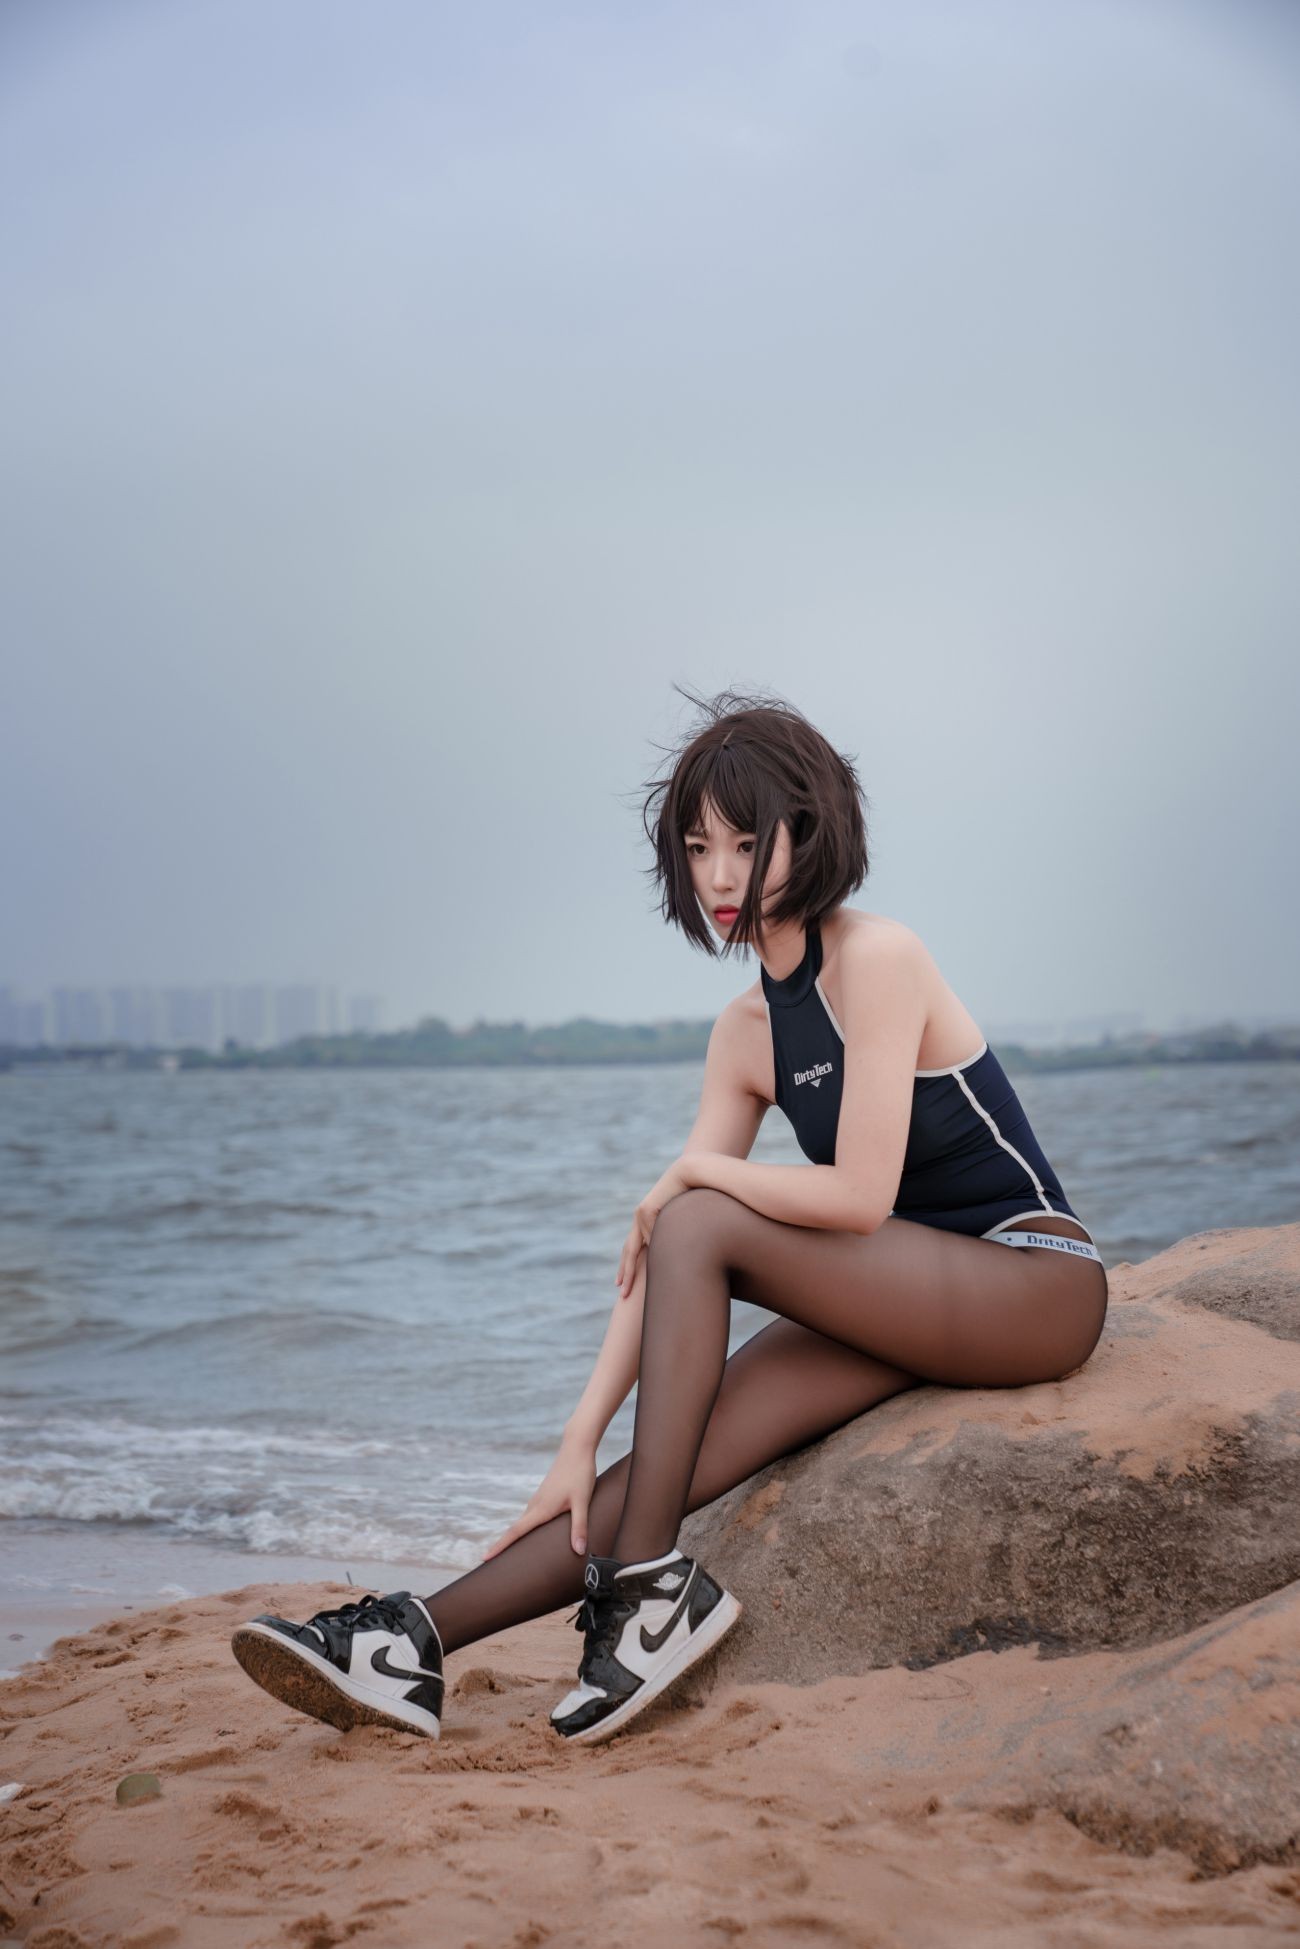 微博美少女轩萧学姐Cosplay性感写真沙滩竞泳 (46)